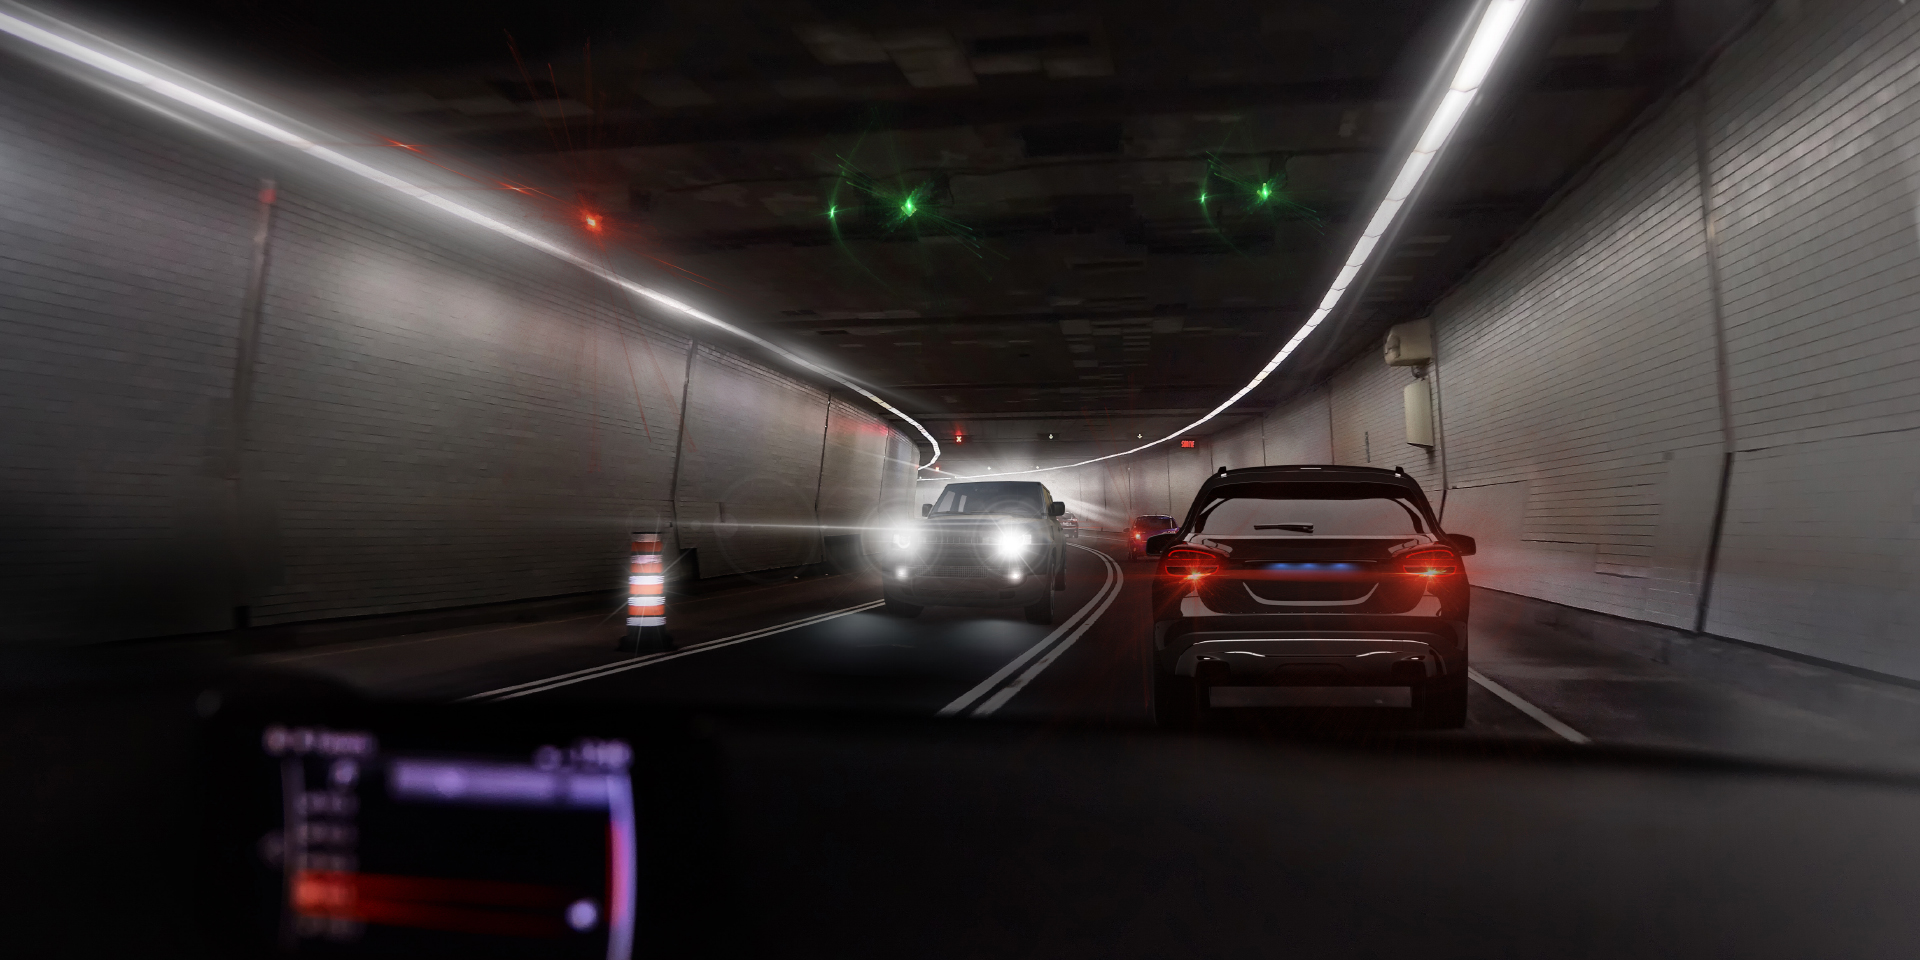 Dos imágenes de un conductor en un túnel con tráfico en sentido contrario, mostrando en una imagen el deslumbramiento del coche y las luces del túnel y en la otra imagen un deslumbramiento claramente reducido.